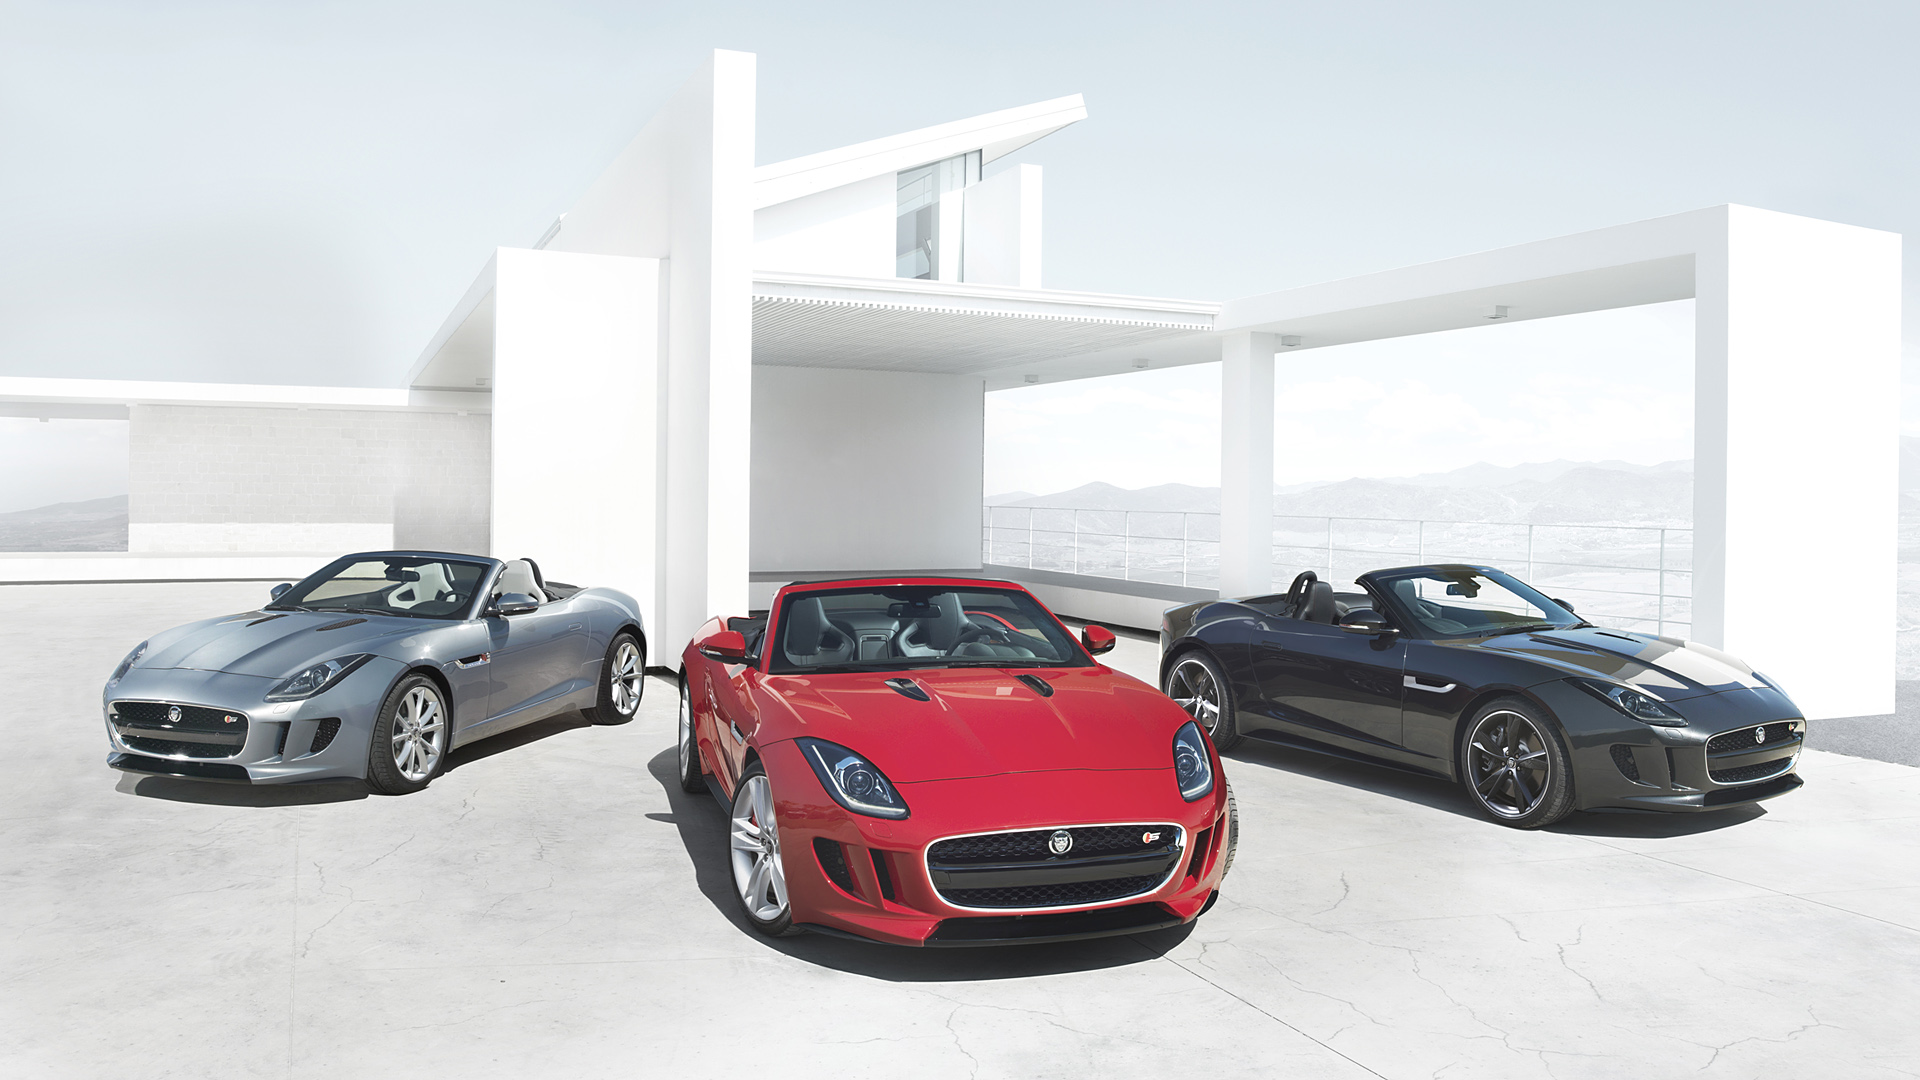  2014 Jaguar F-Type Wallpaper.